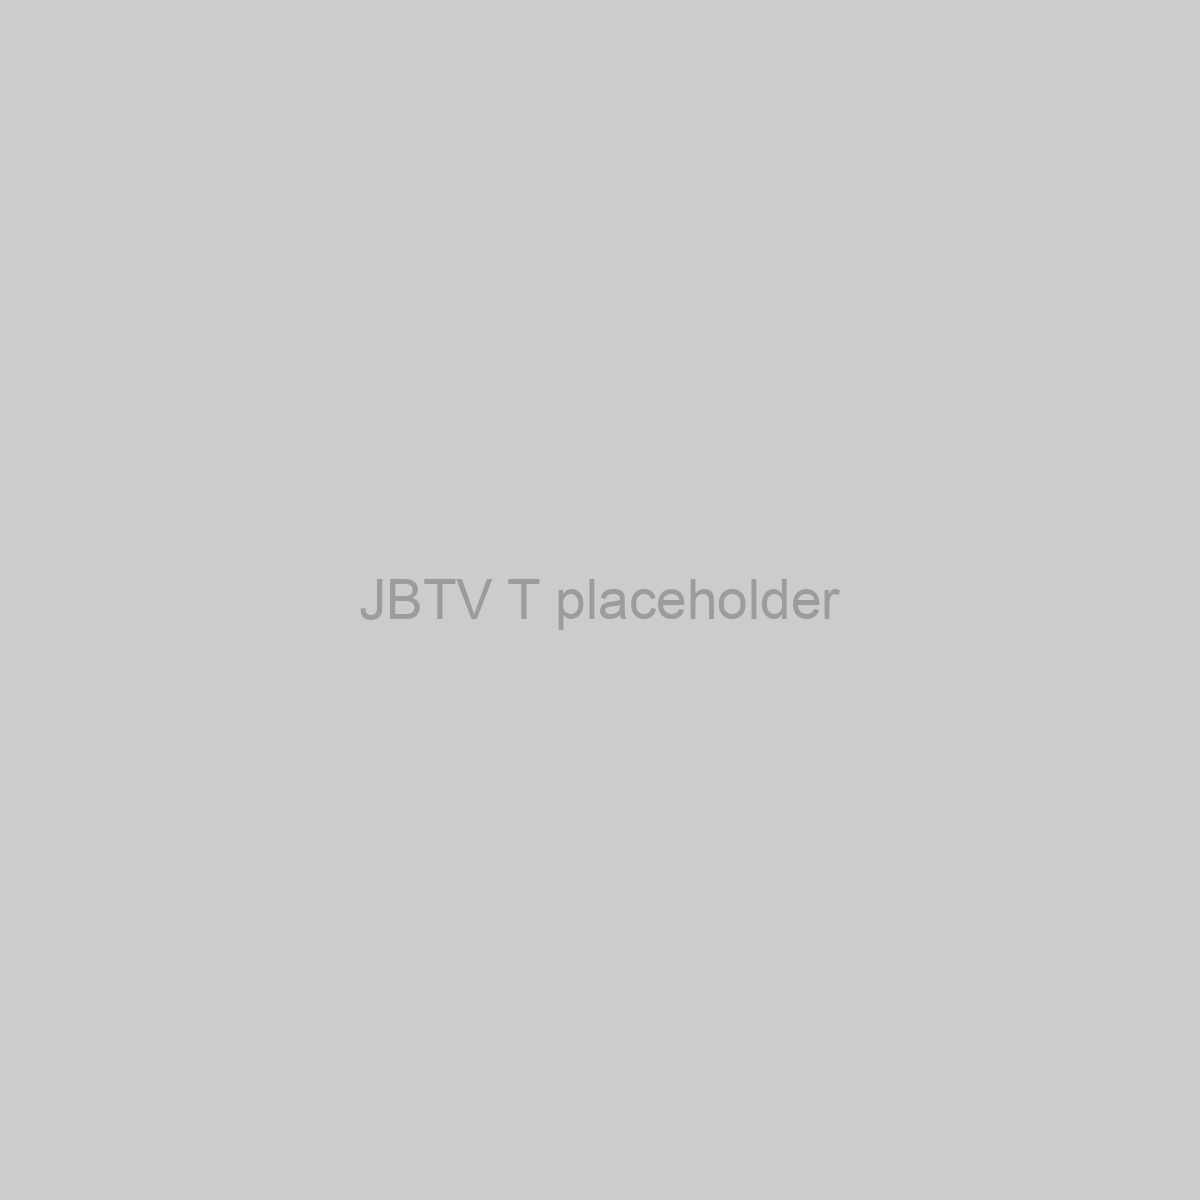 JBTV T Placeholder Image